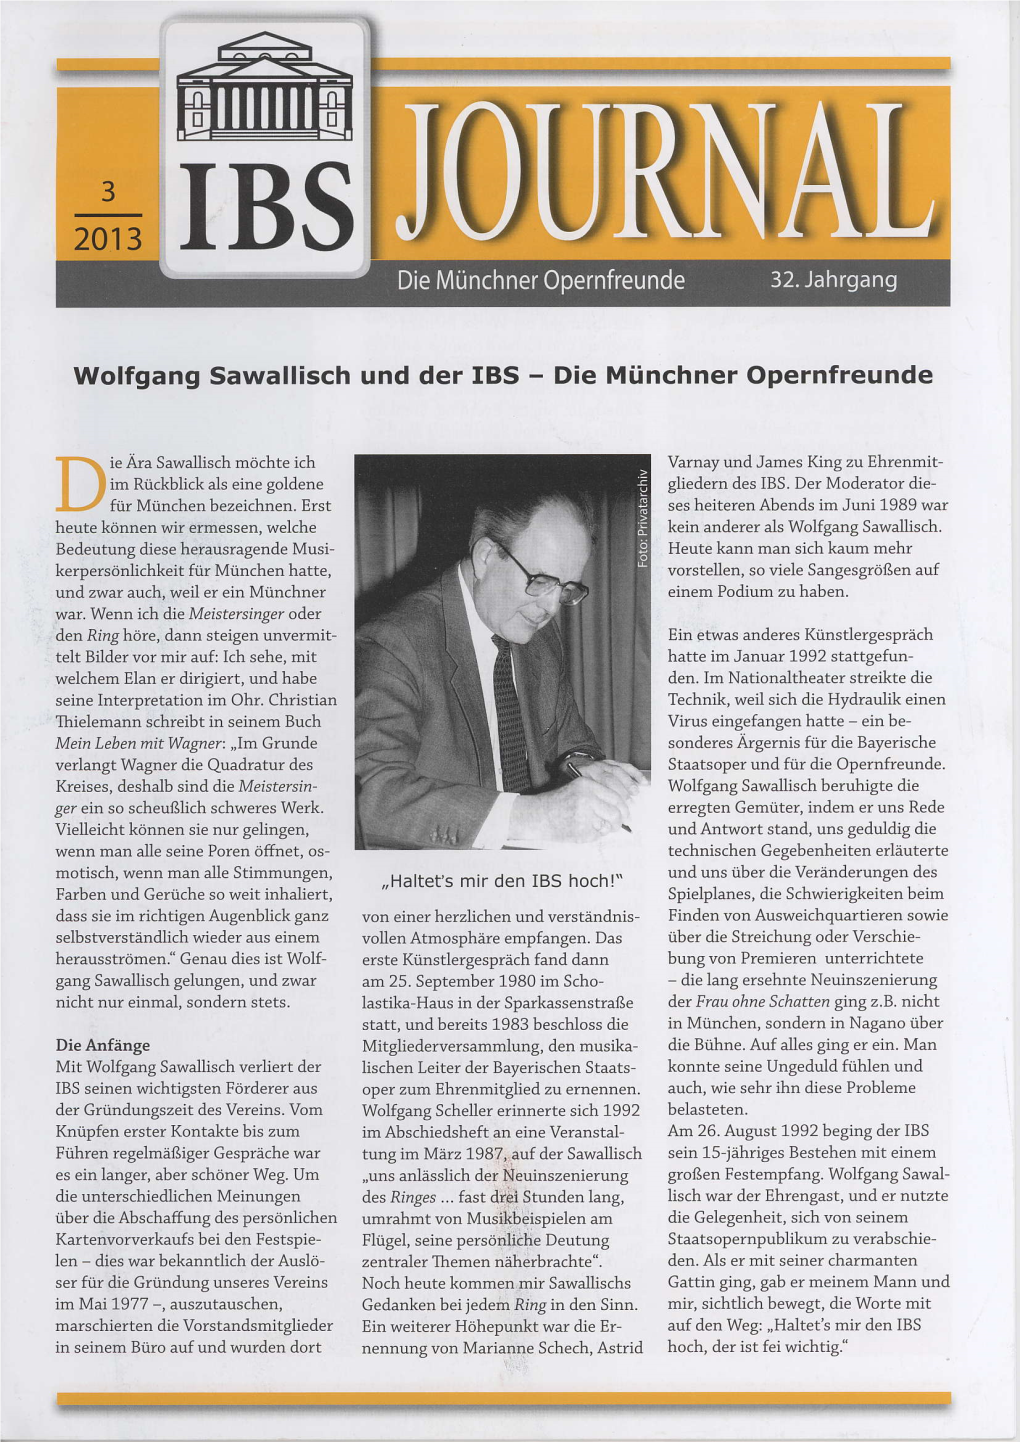 Wolfgang Sawallisch Und Der IBS - Die Münchner Opernfreunde